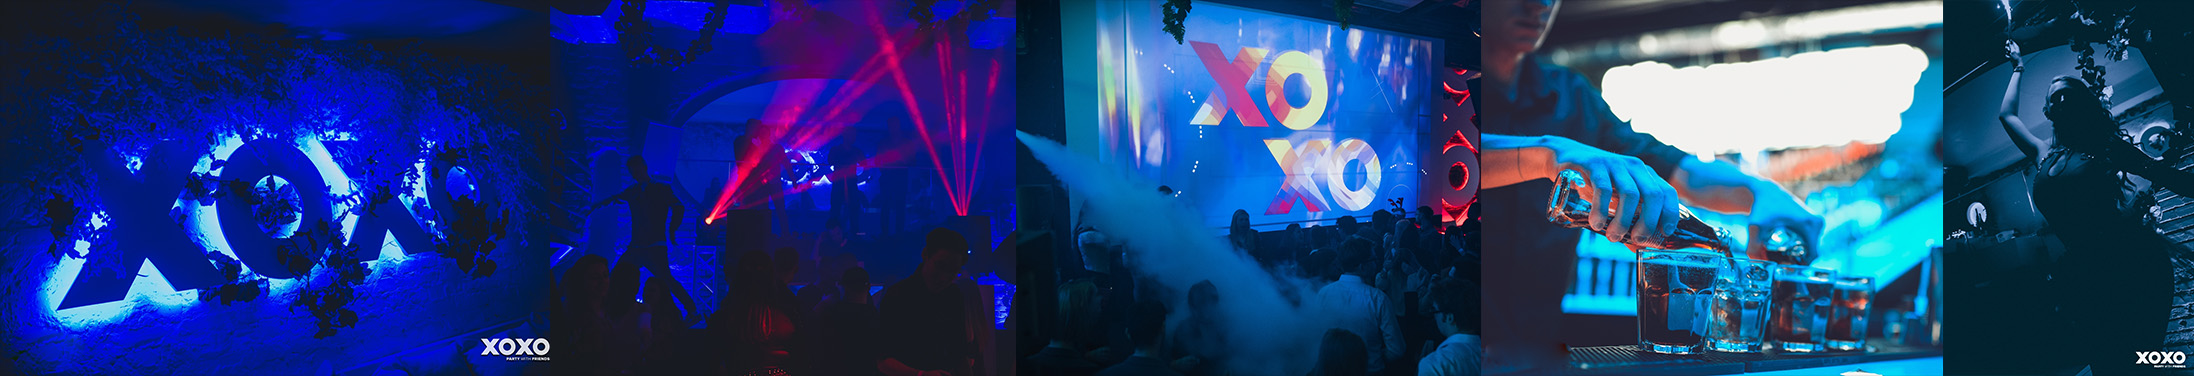 30 urodziny w Warszawie - zapraszamy do XOXO 